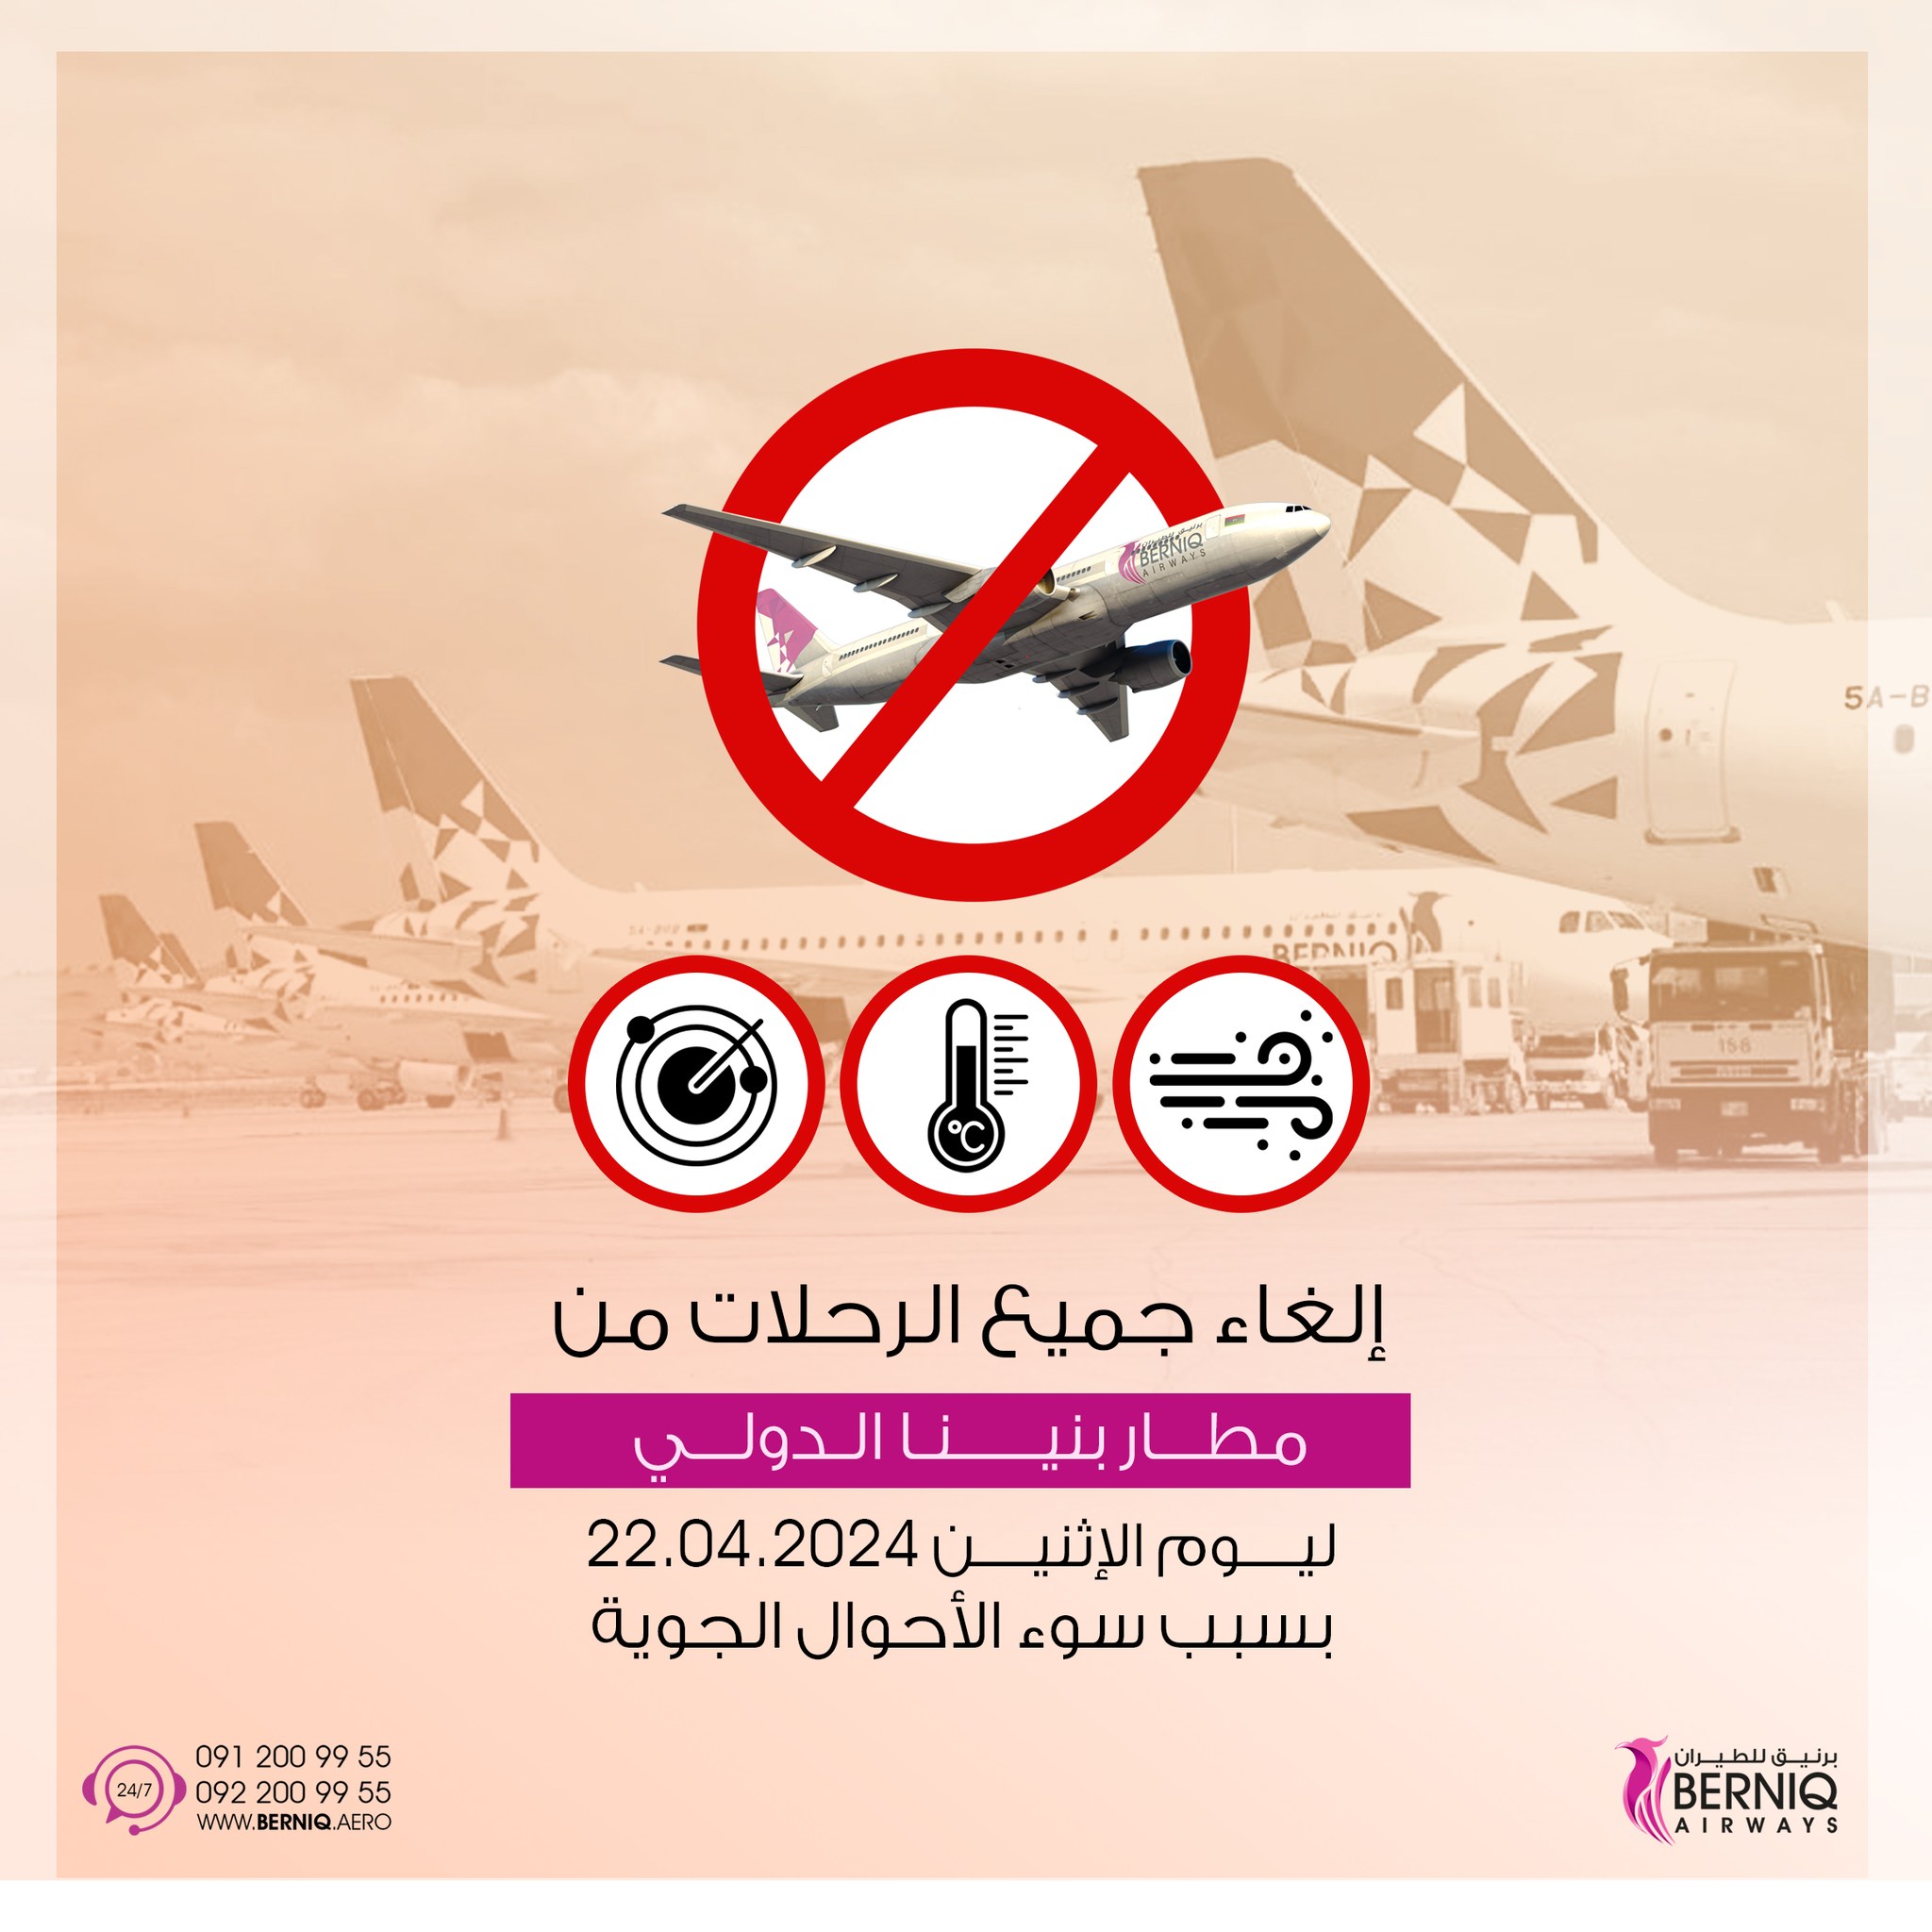 إلغاء رحلات مطار بنينا بسبب سوء الأحوال الجوية